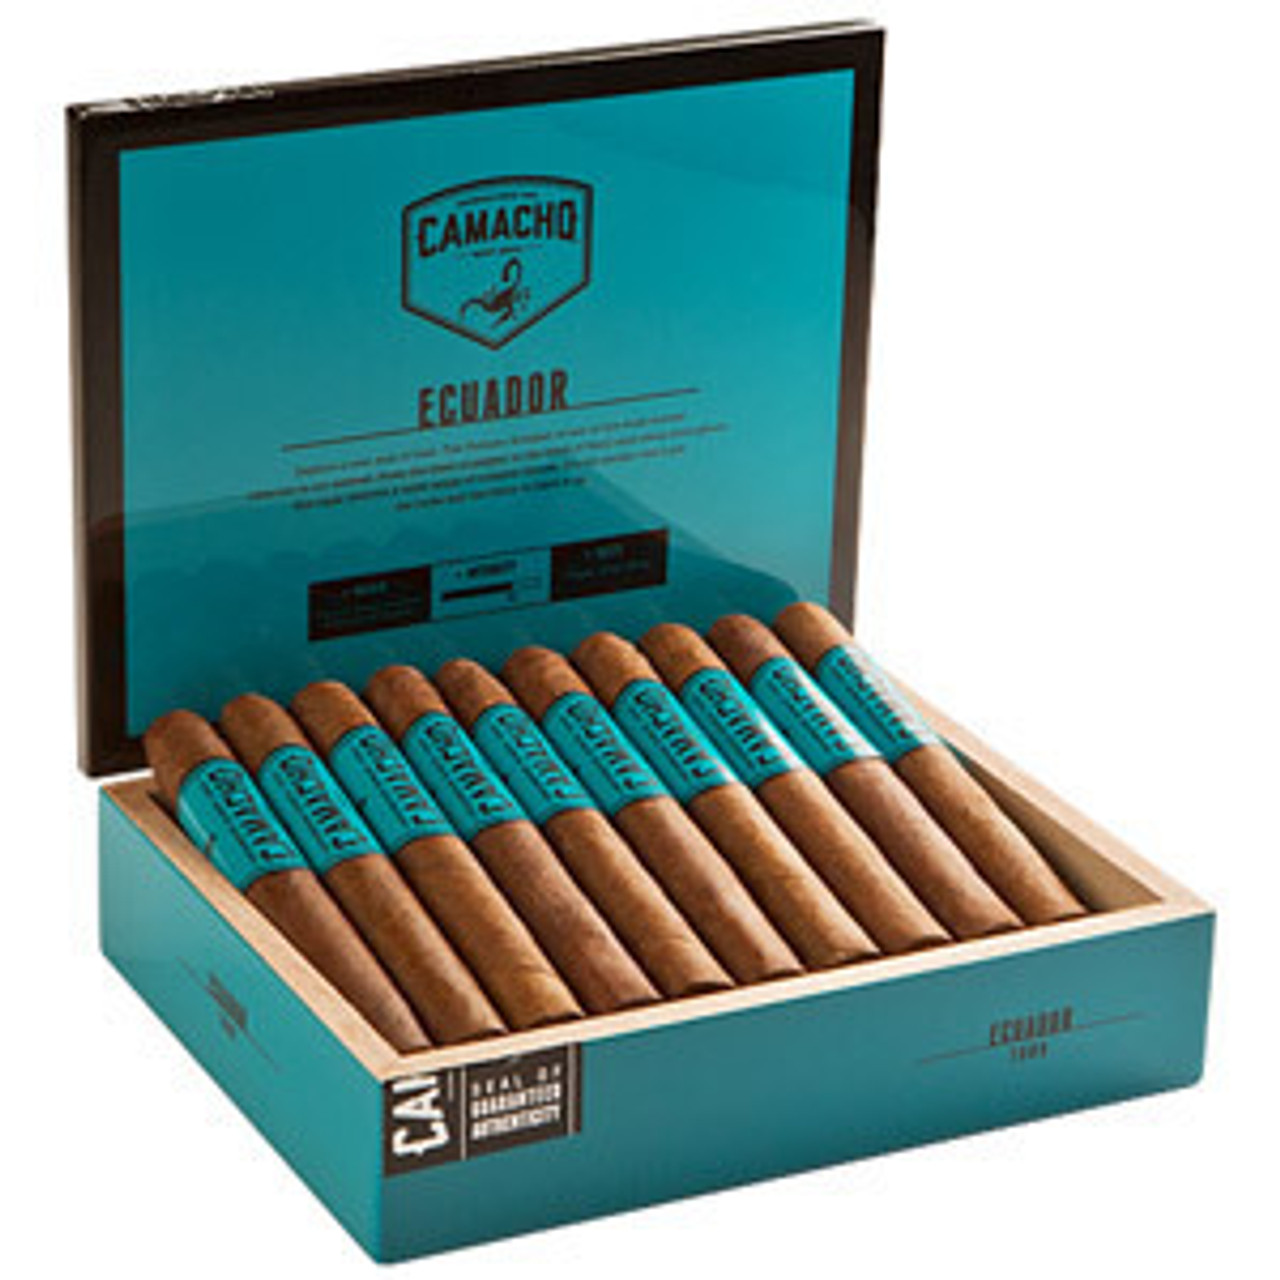 Camacho Ecuador Toro Cigars - 6 x 50 (Box of 20) Open